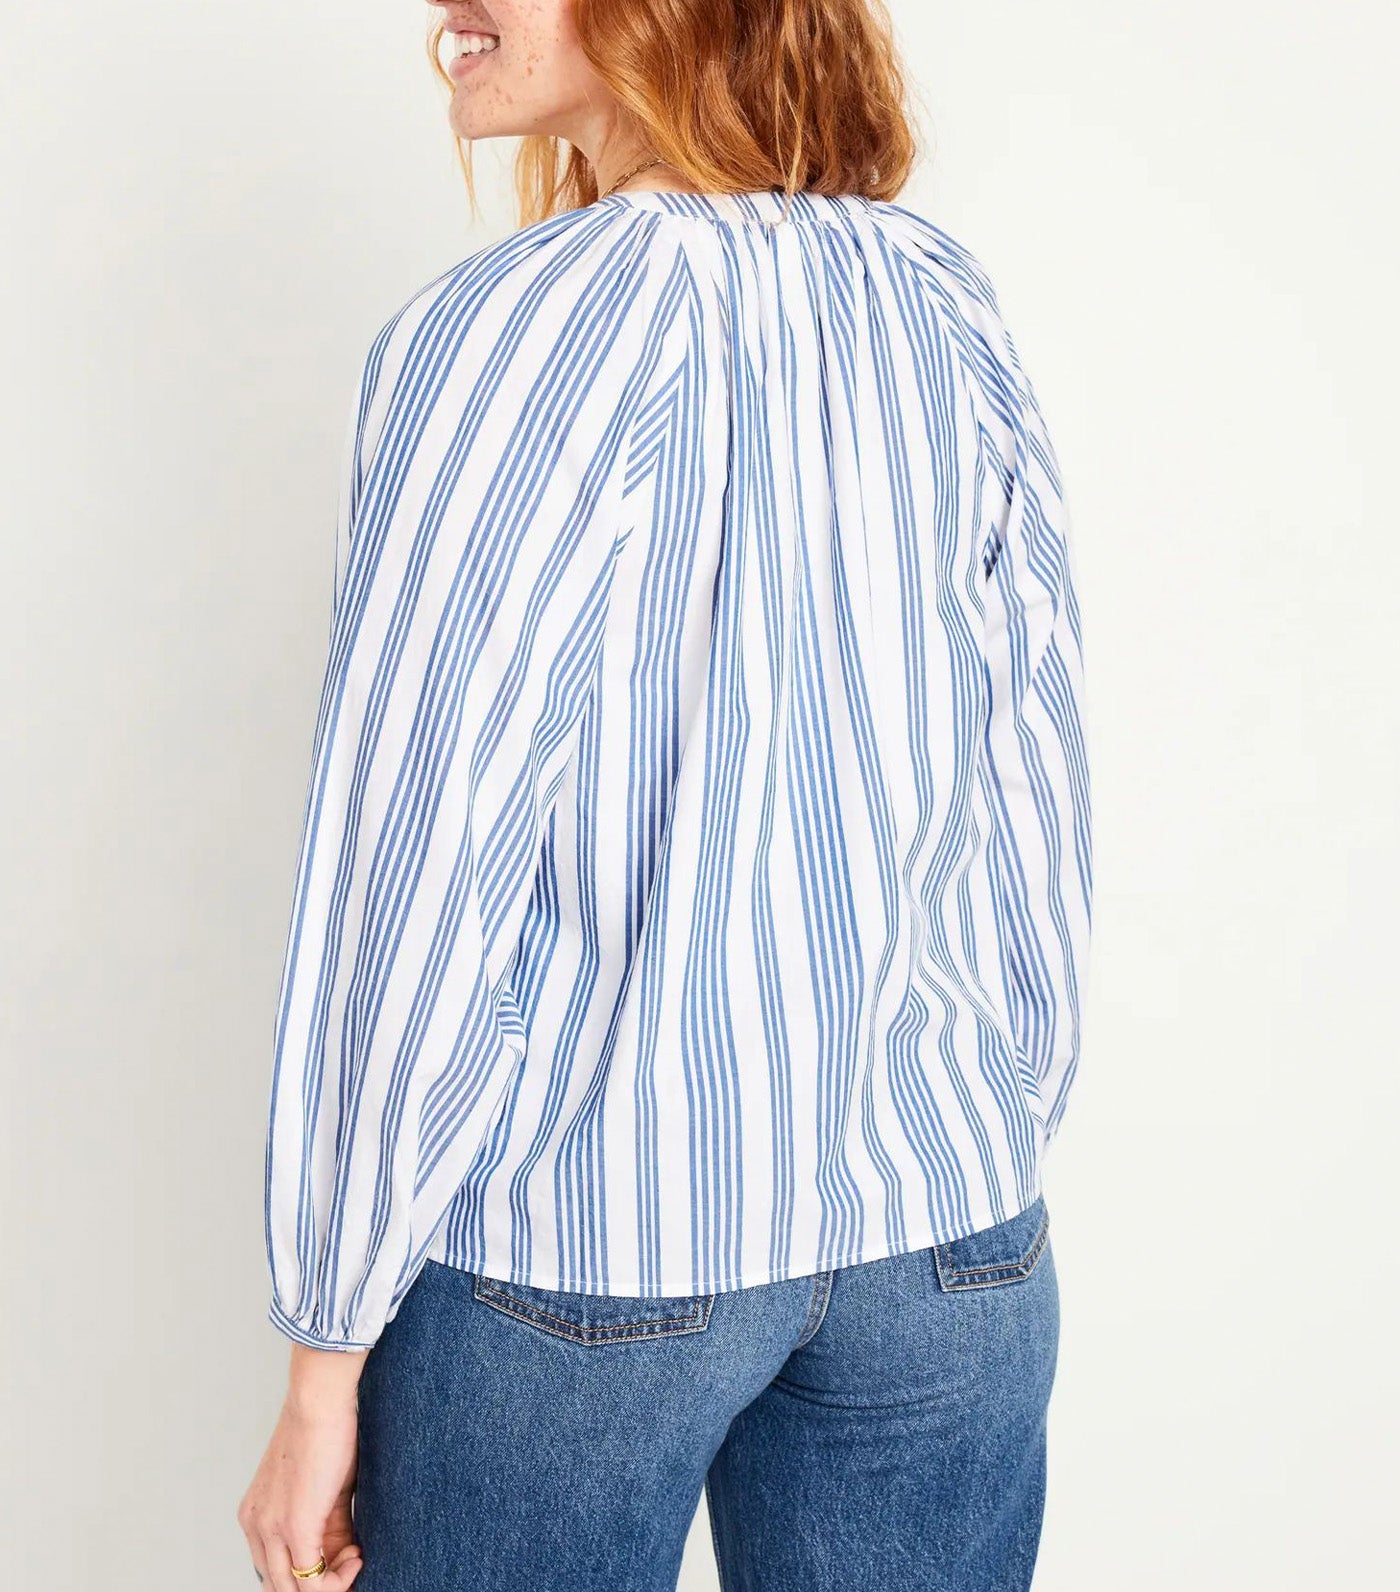 Long-Sleeve Split-Neck Top For Women White/Blue Stripe